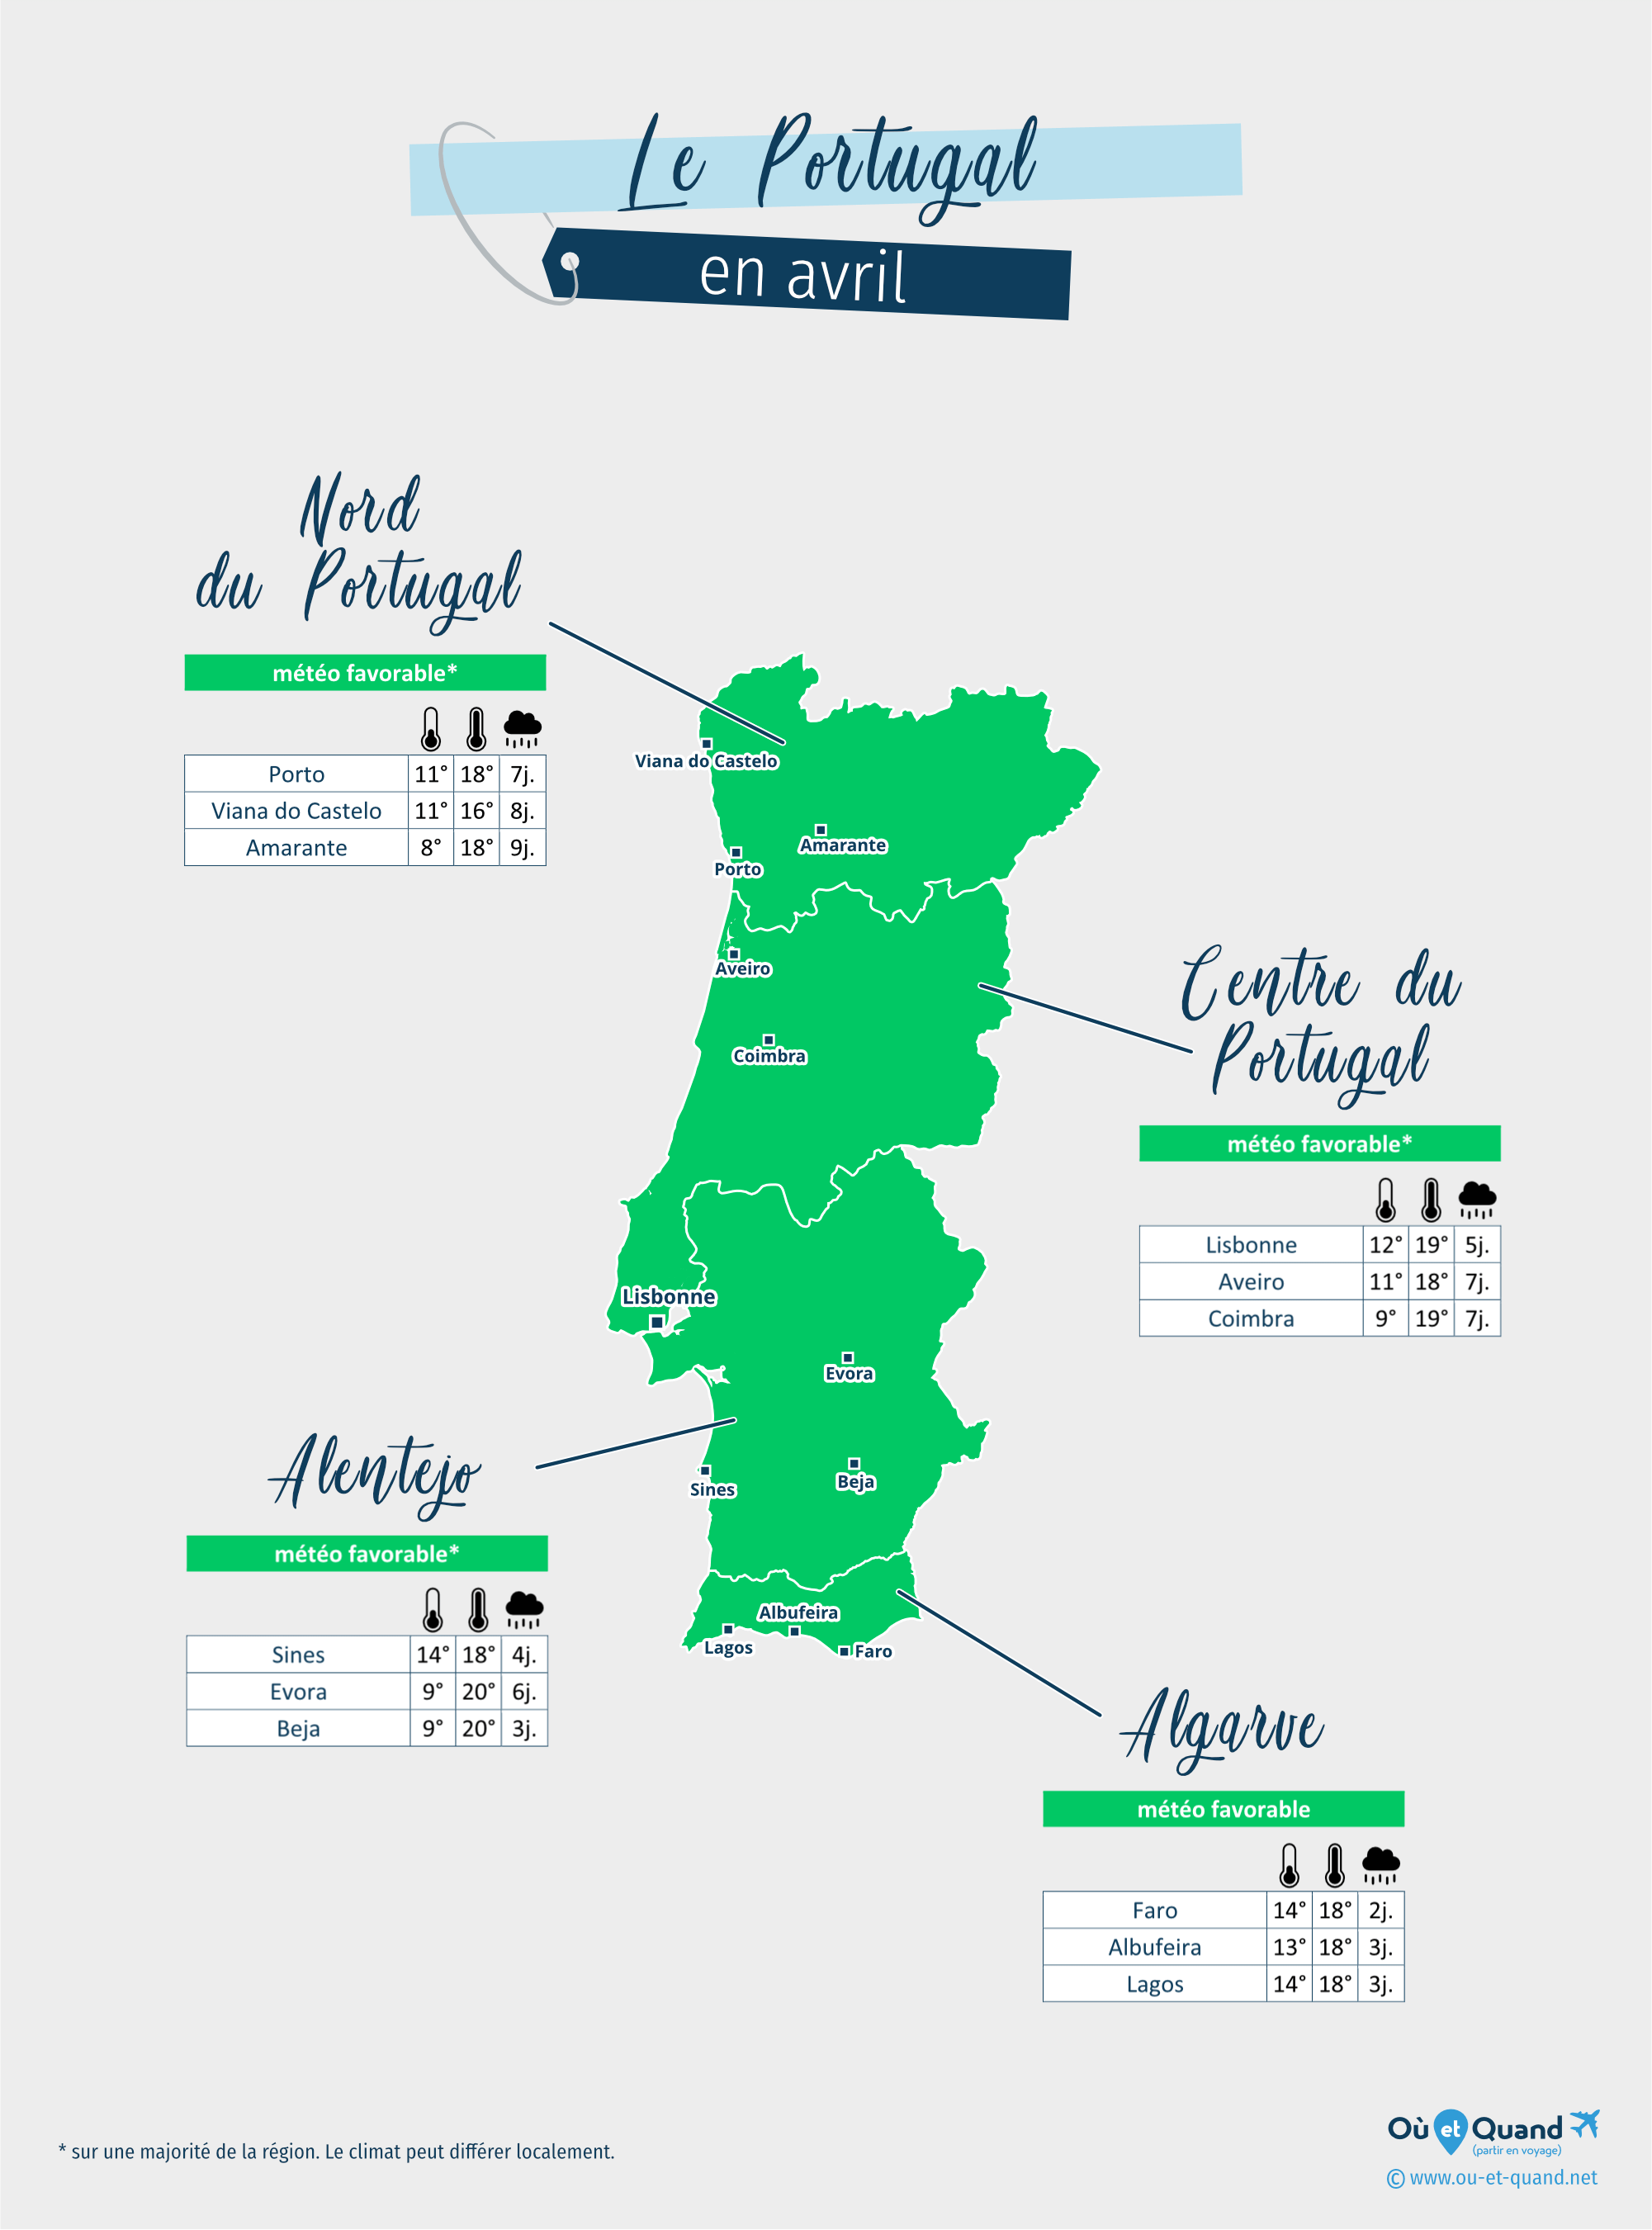 Carte de la météo en avril dans les régions du Portugal